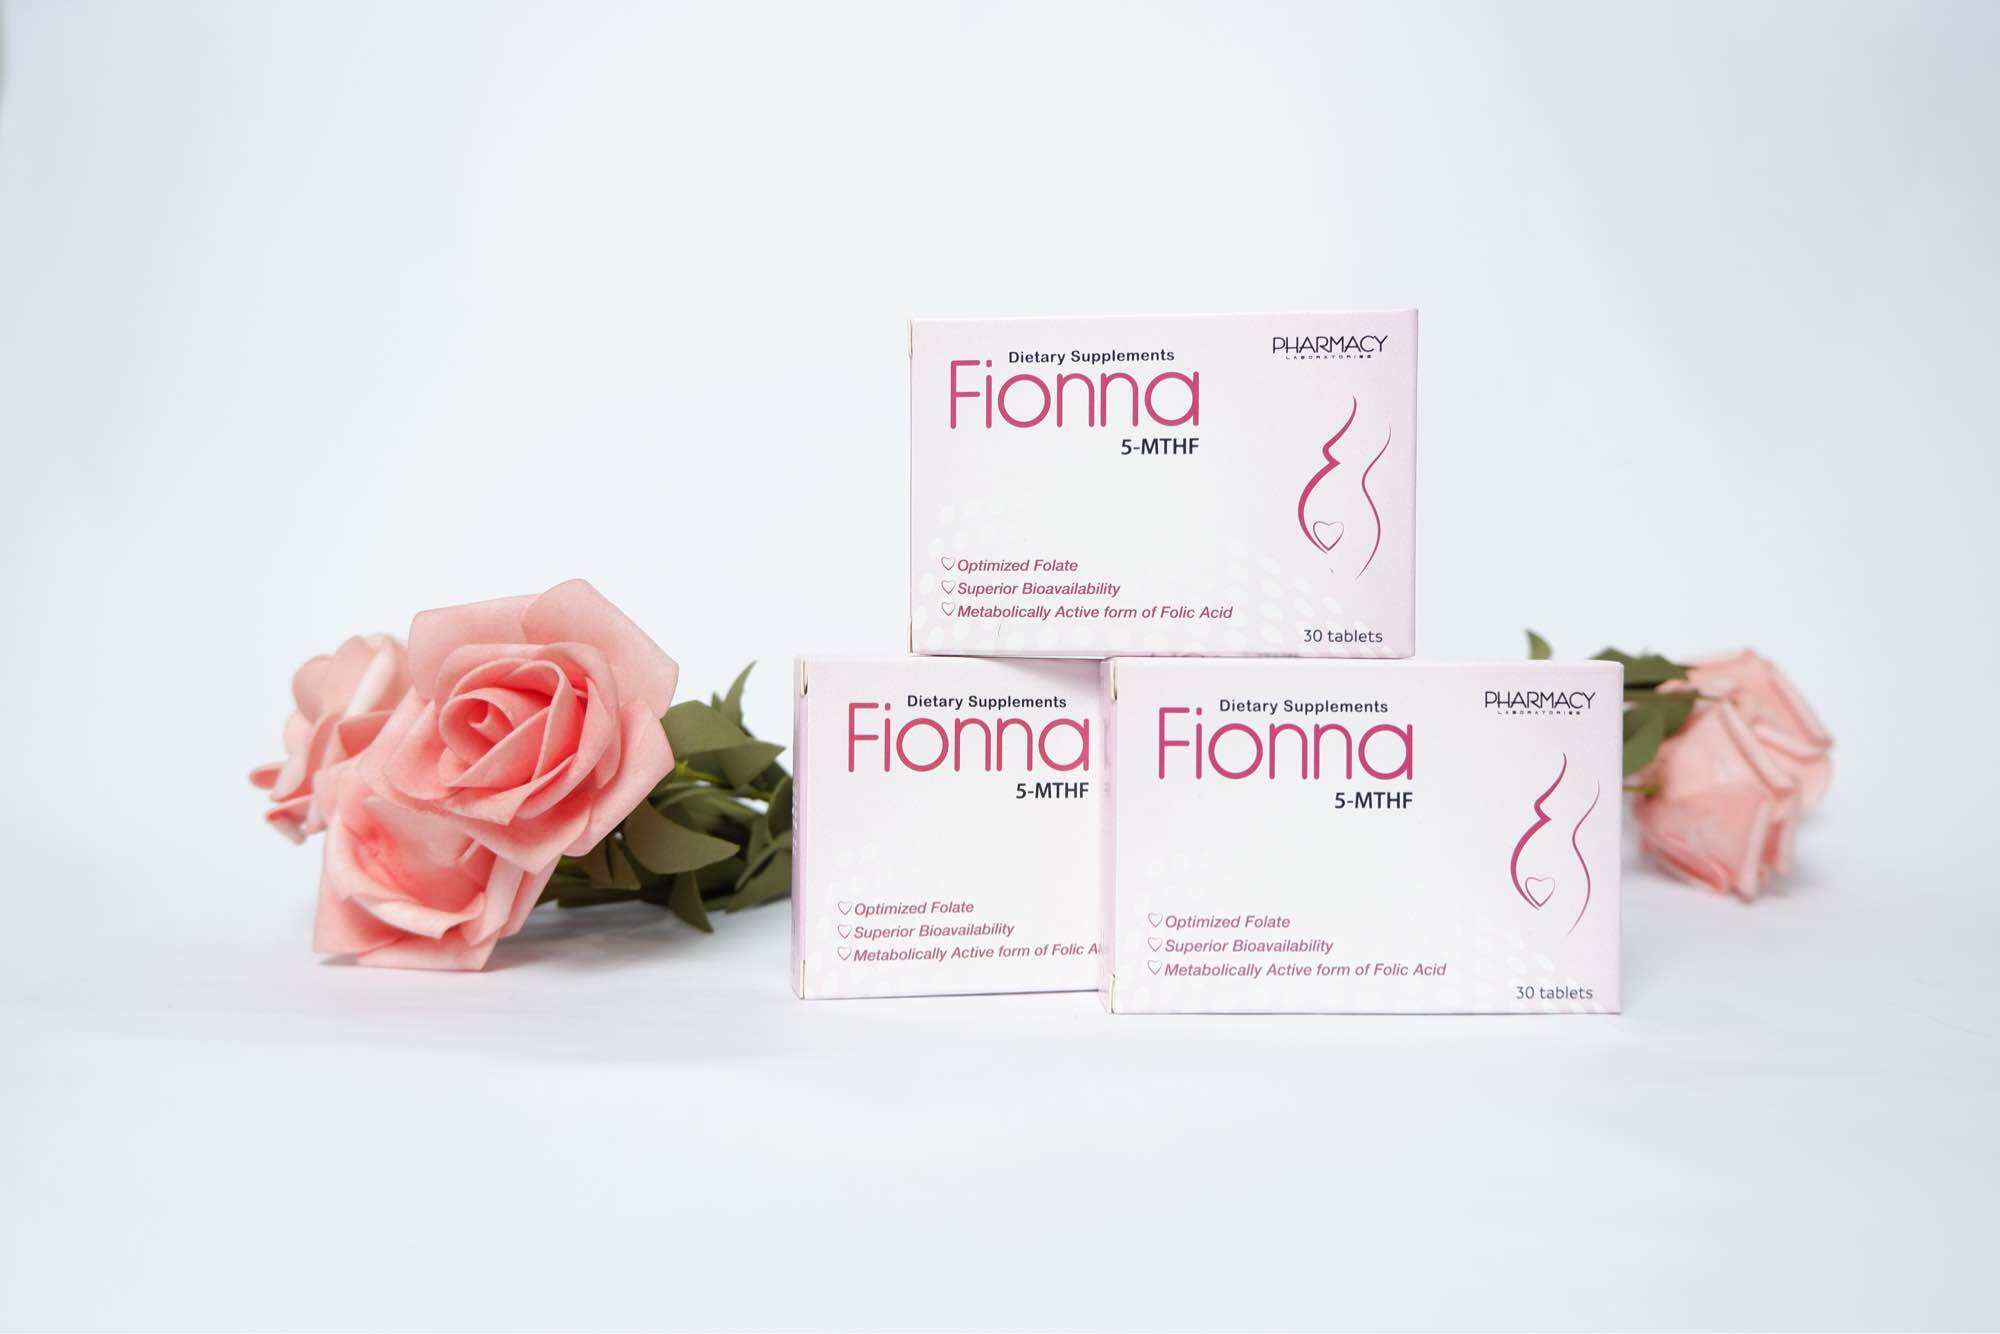 Fionna- bổ sung 5- MTHF (dạng hoạt tính của acid folic) cho mẹ bầu